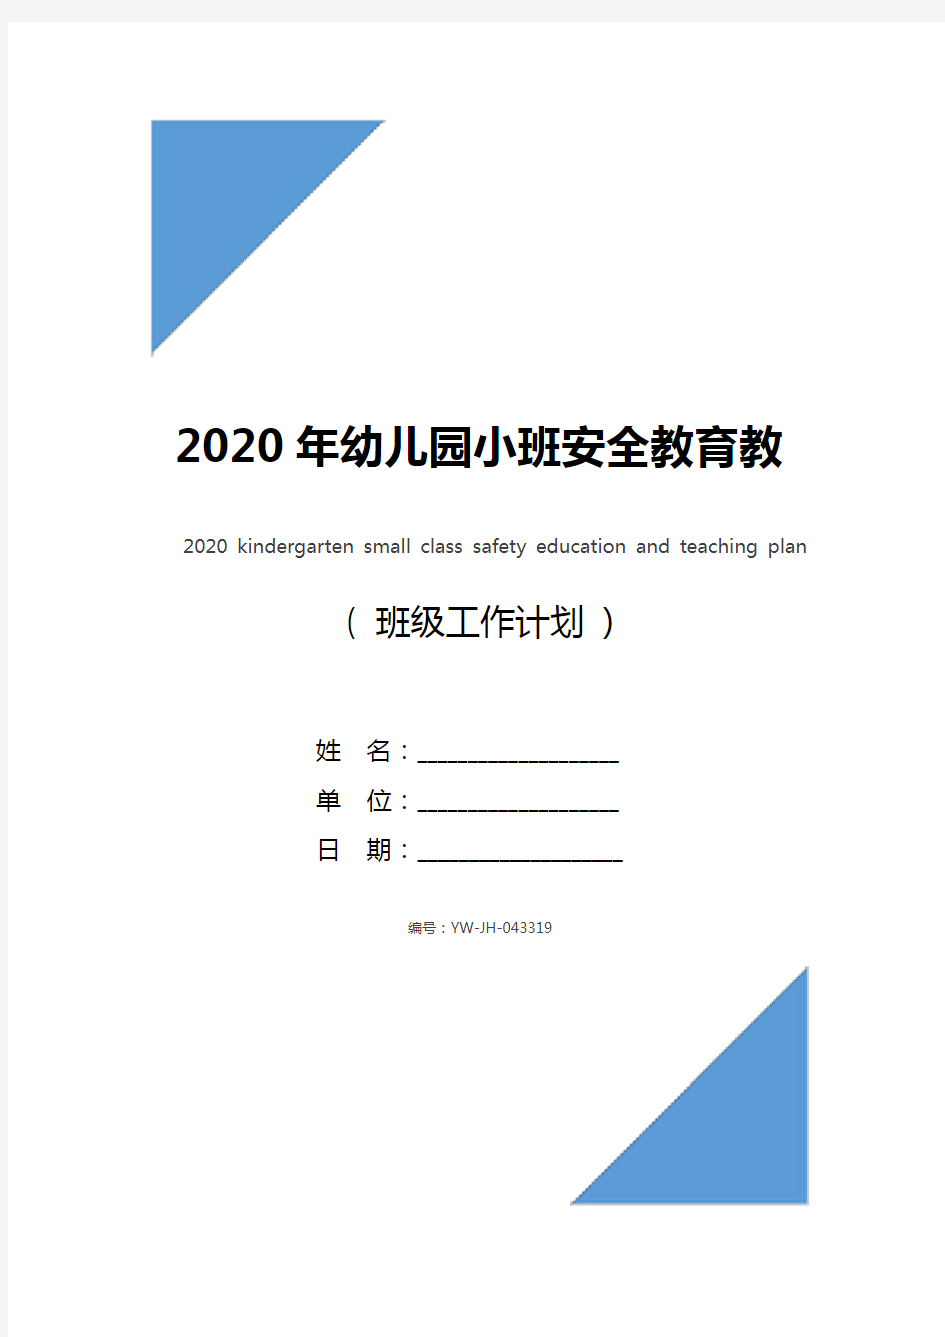 2020年幼儿园小班安全教育教学计划